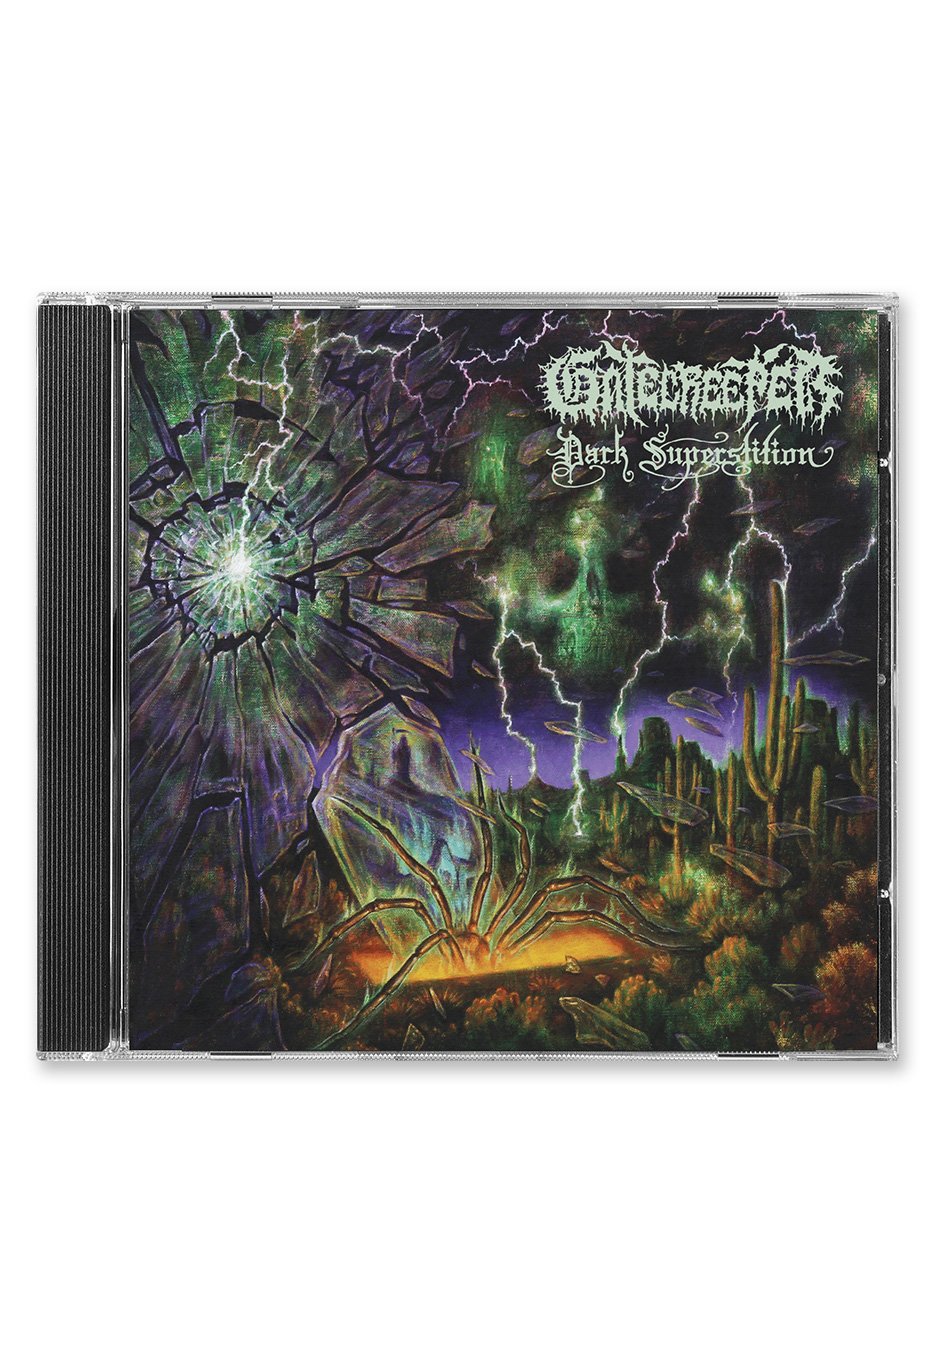 Gatecreeper - Dark Superstition - CD